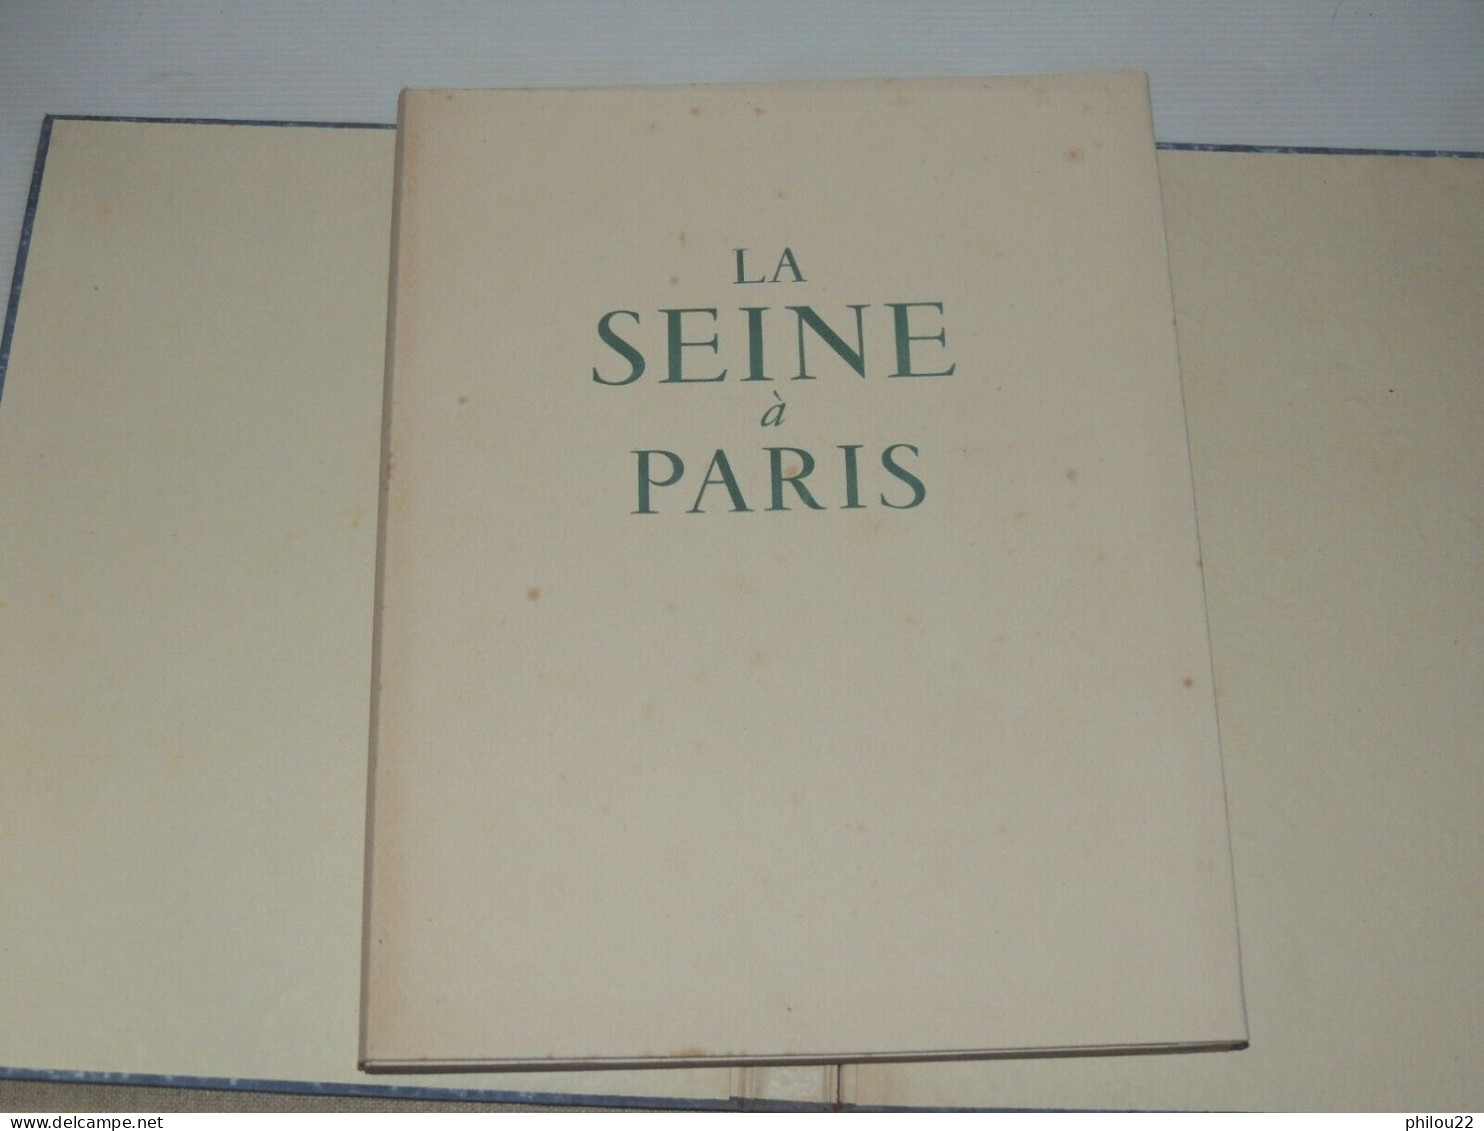 La Seine à Paris - 47 Photos De RENE-JACQUES - Tirage 990 Exemplaires  E.O. 1944 - 1901-1940